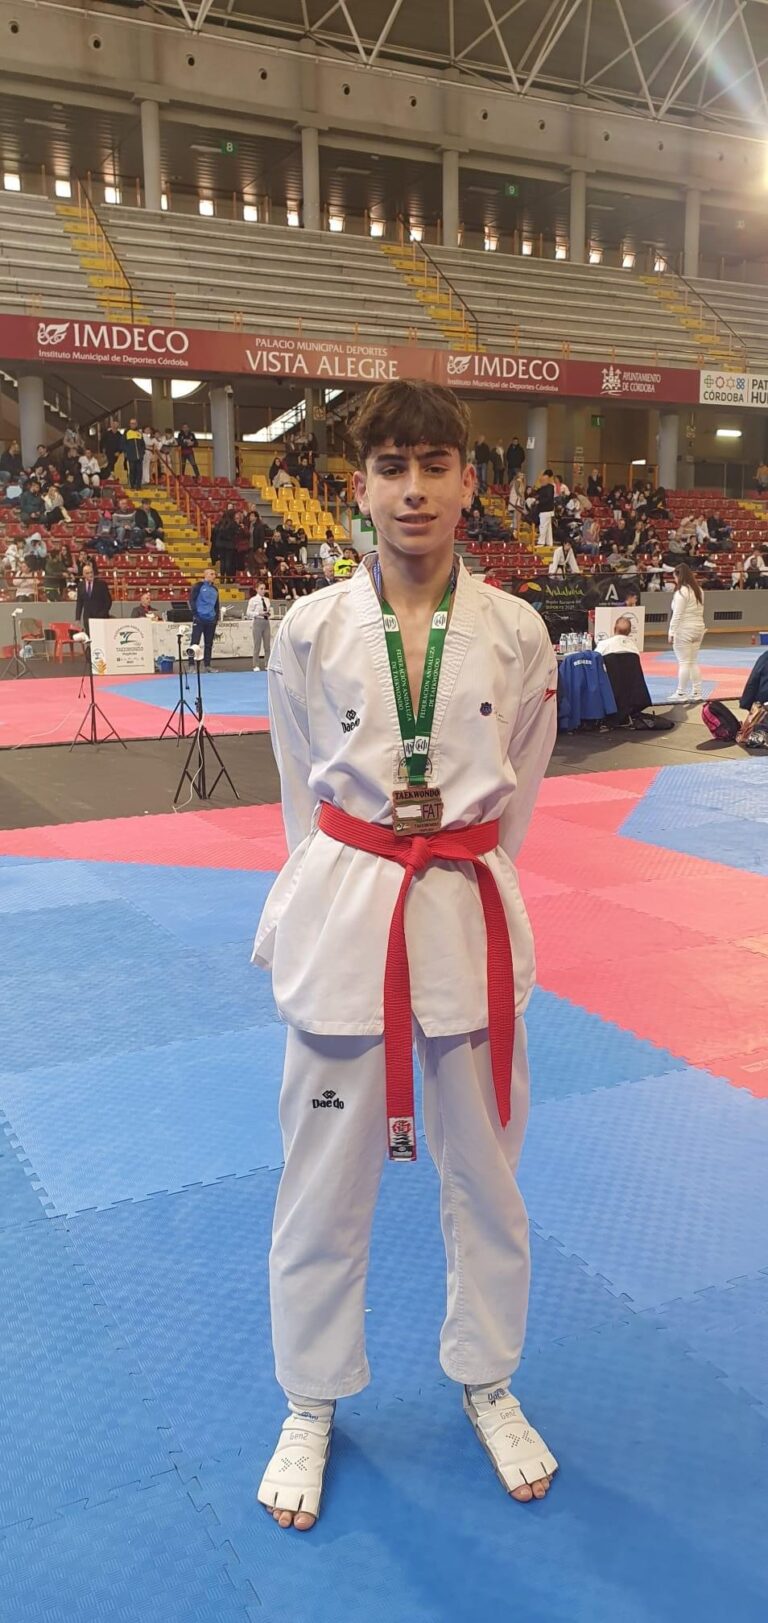 Xavier Ginard Clemente del Club Esportiu Taekwondo Marratxí, bronce en Andalucía